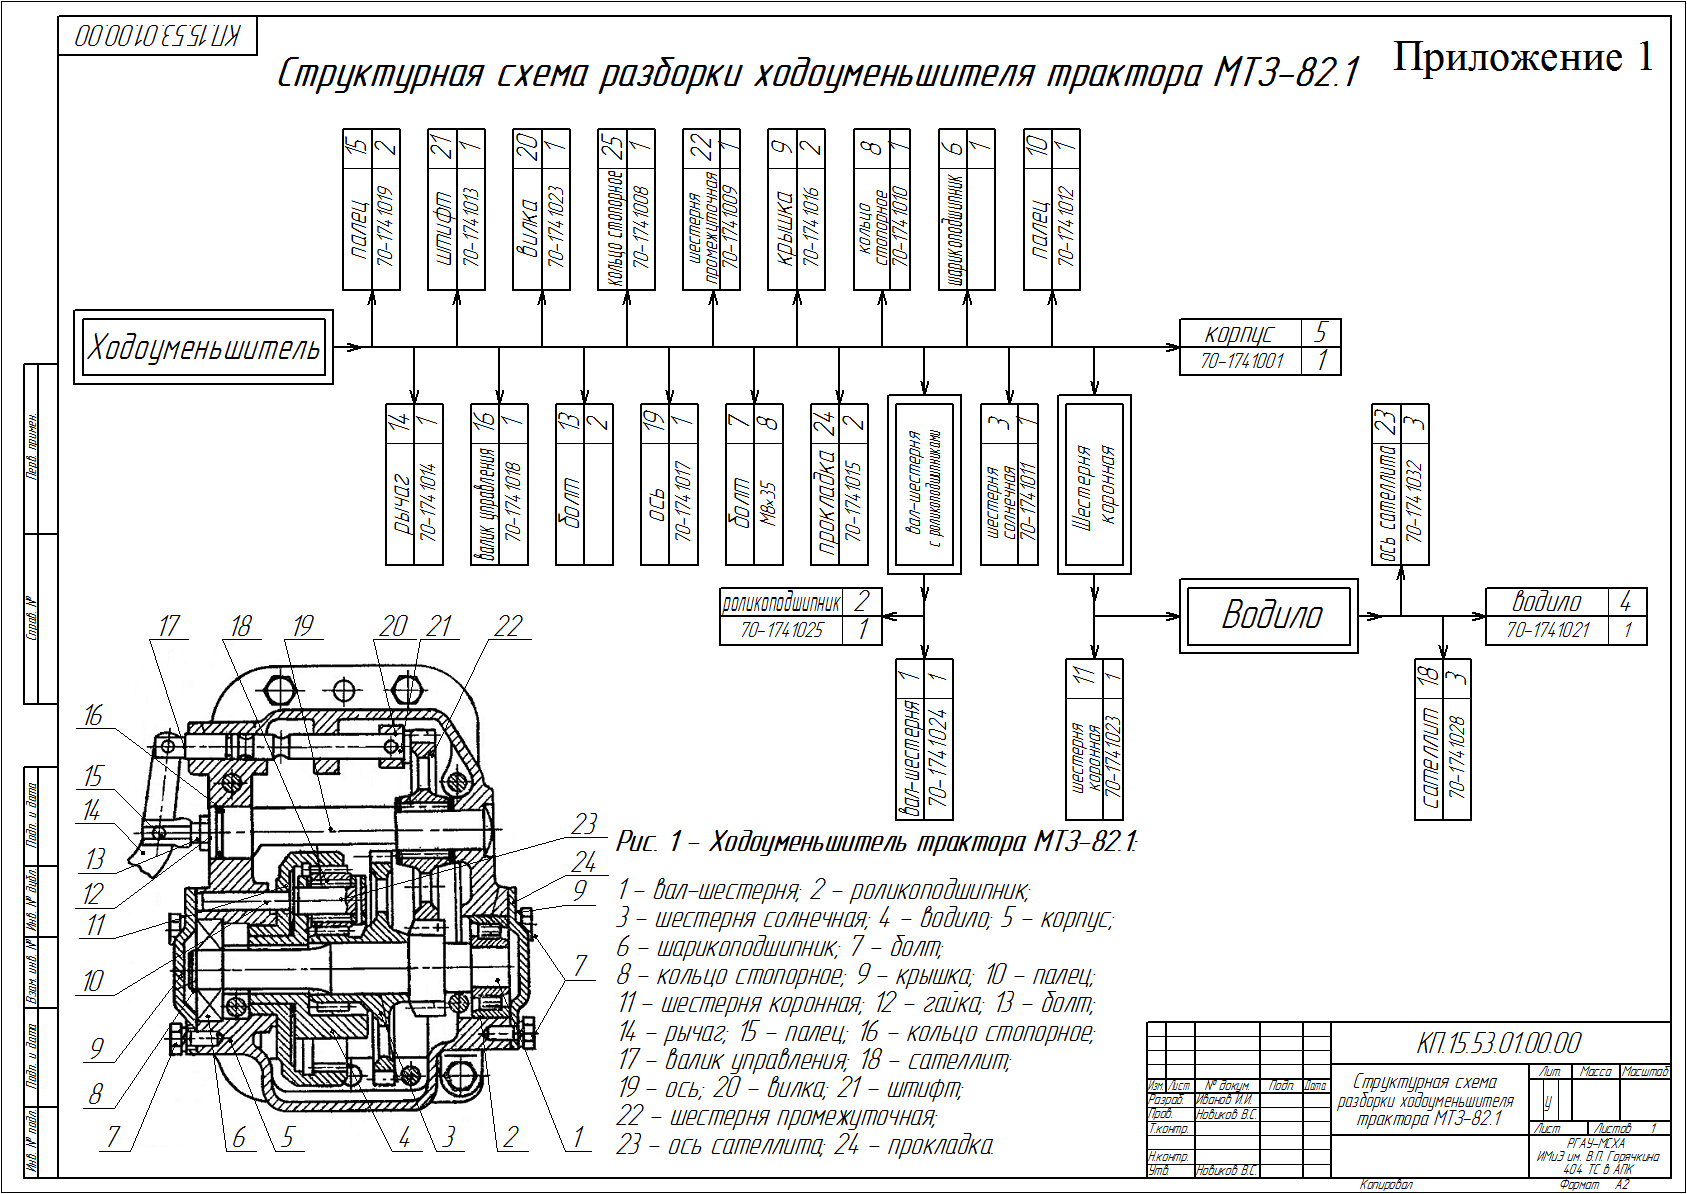 Схема сборки узла. Схема технологического процесса сборки двигателя КАМАЗ 5320. Структурная схема сборки двигателя ВАЗ. Технологическая схема сборки двигателя ВАЗ 2108. Технологическая схема сборки форсунки.